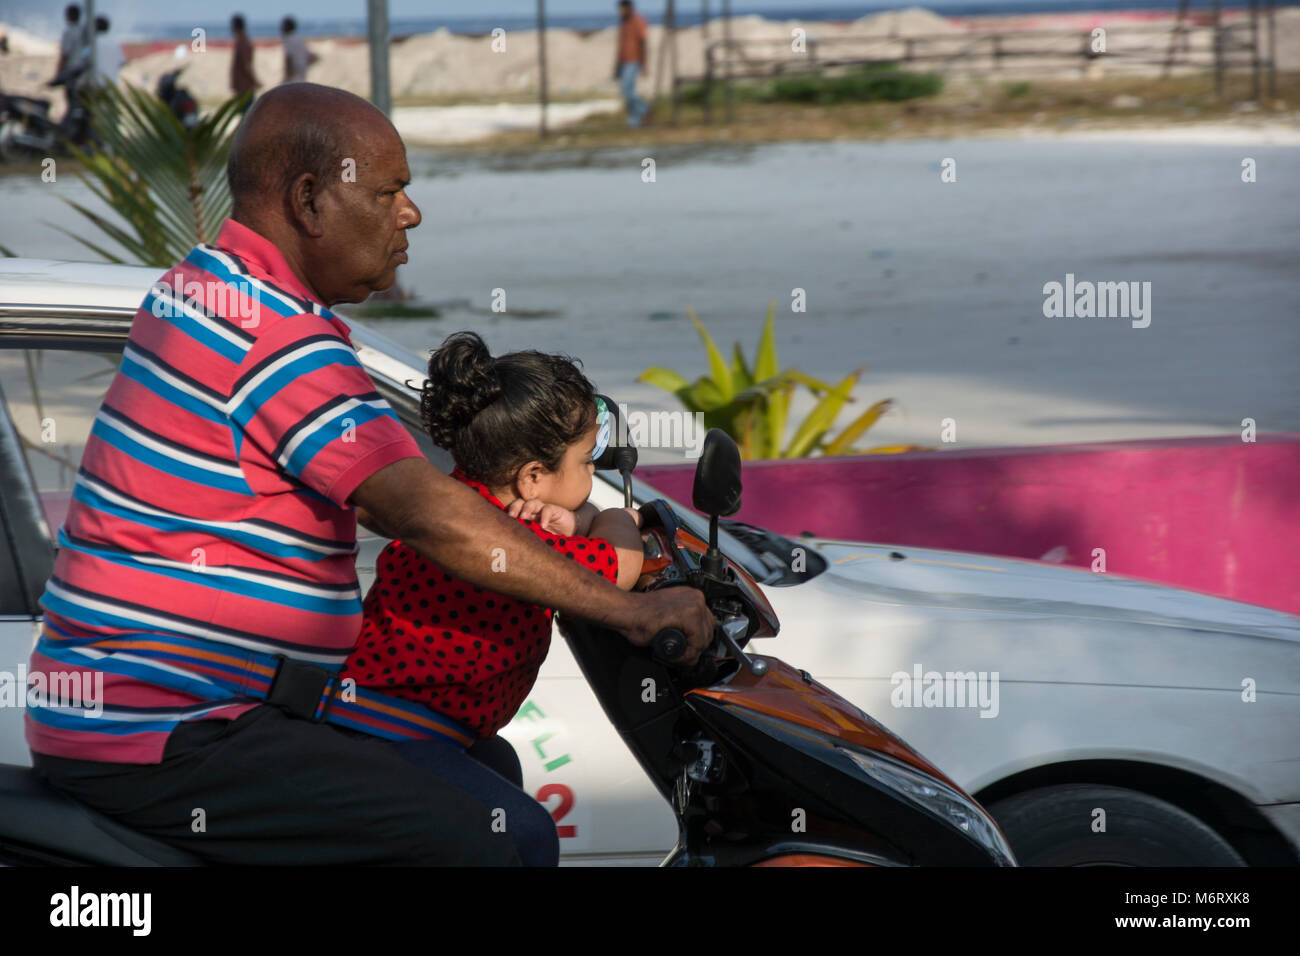 Malediver mit seiner kleinen Tochter auf dem Motorrad, eine übliche Art der Fortbewegung, Kinder sind mit Gurten am Fahrer fest. Stock Photo